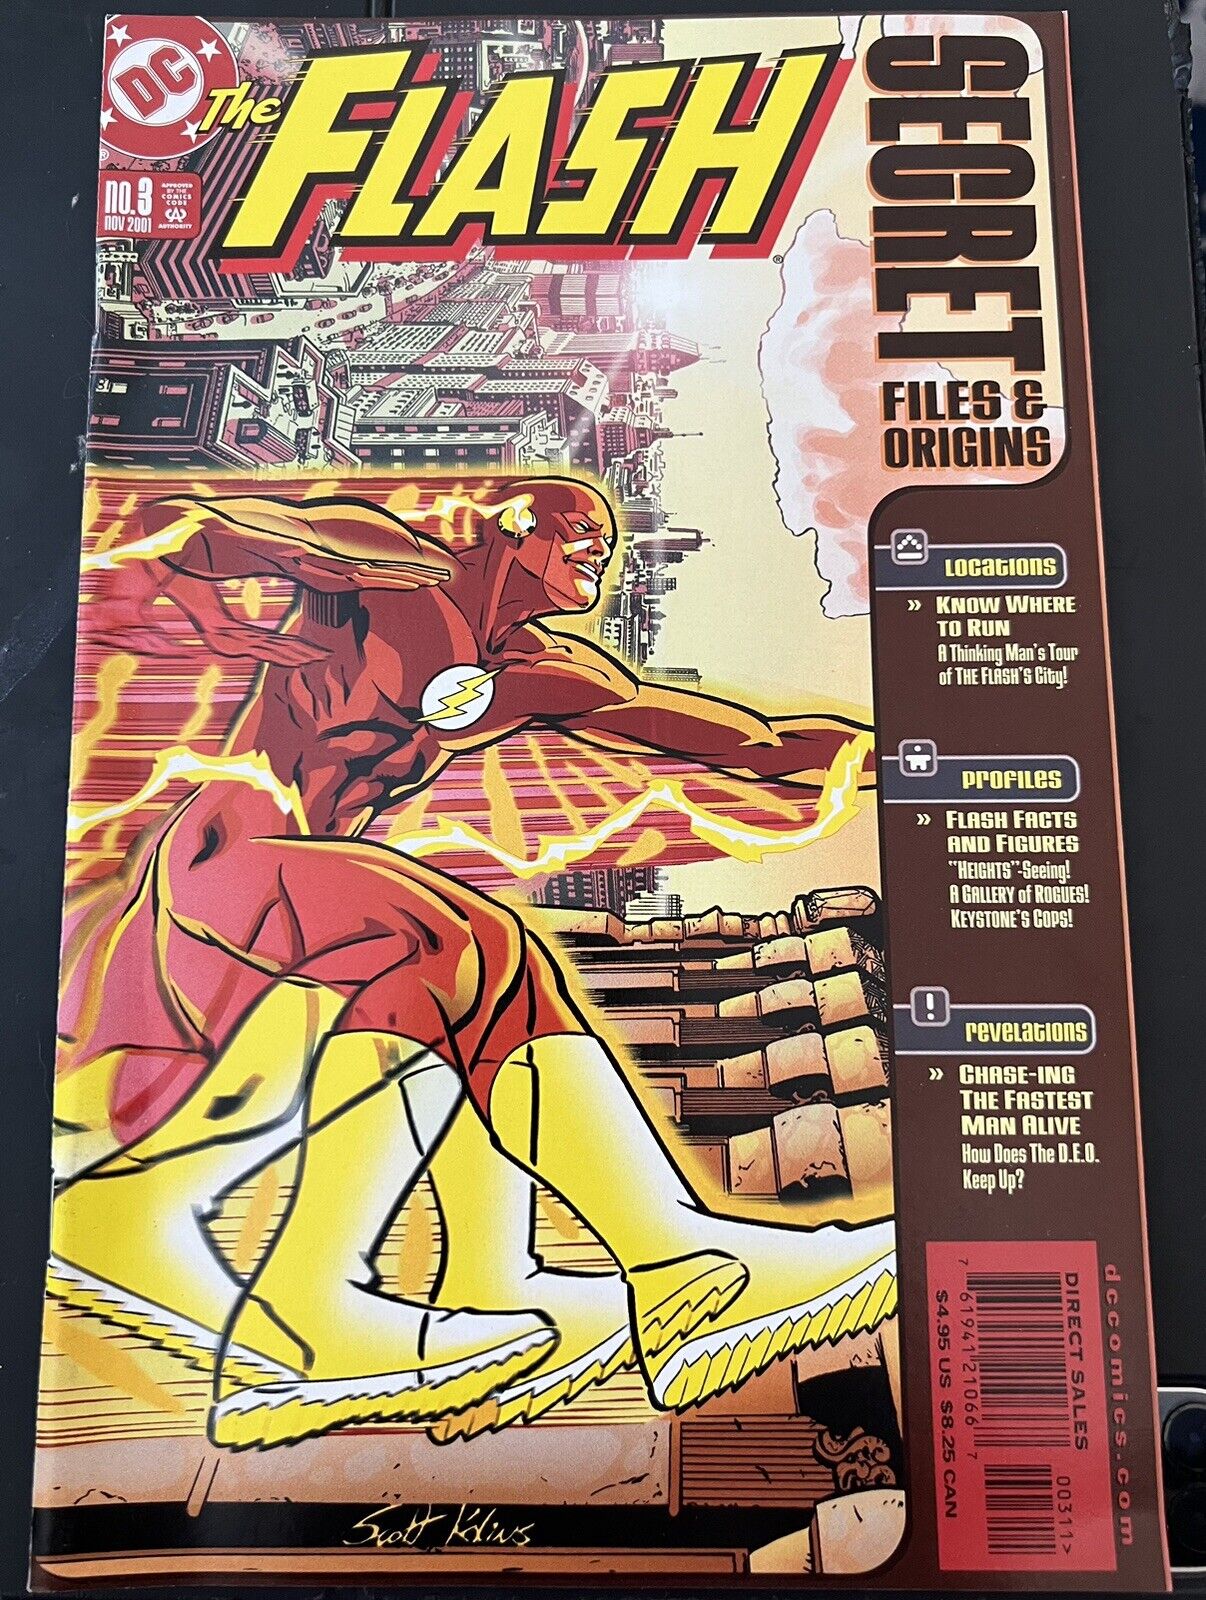 The Flash: Secret Files & Origins #3 (2001)